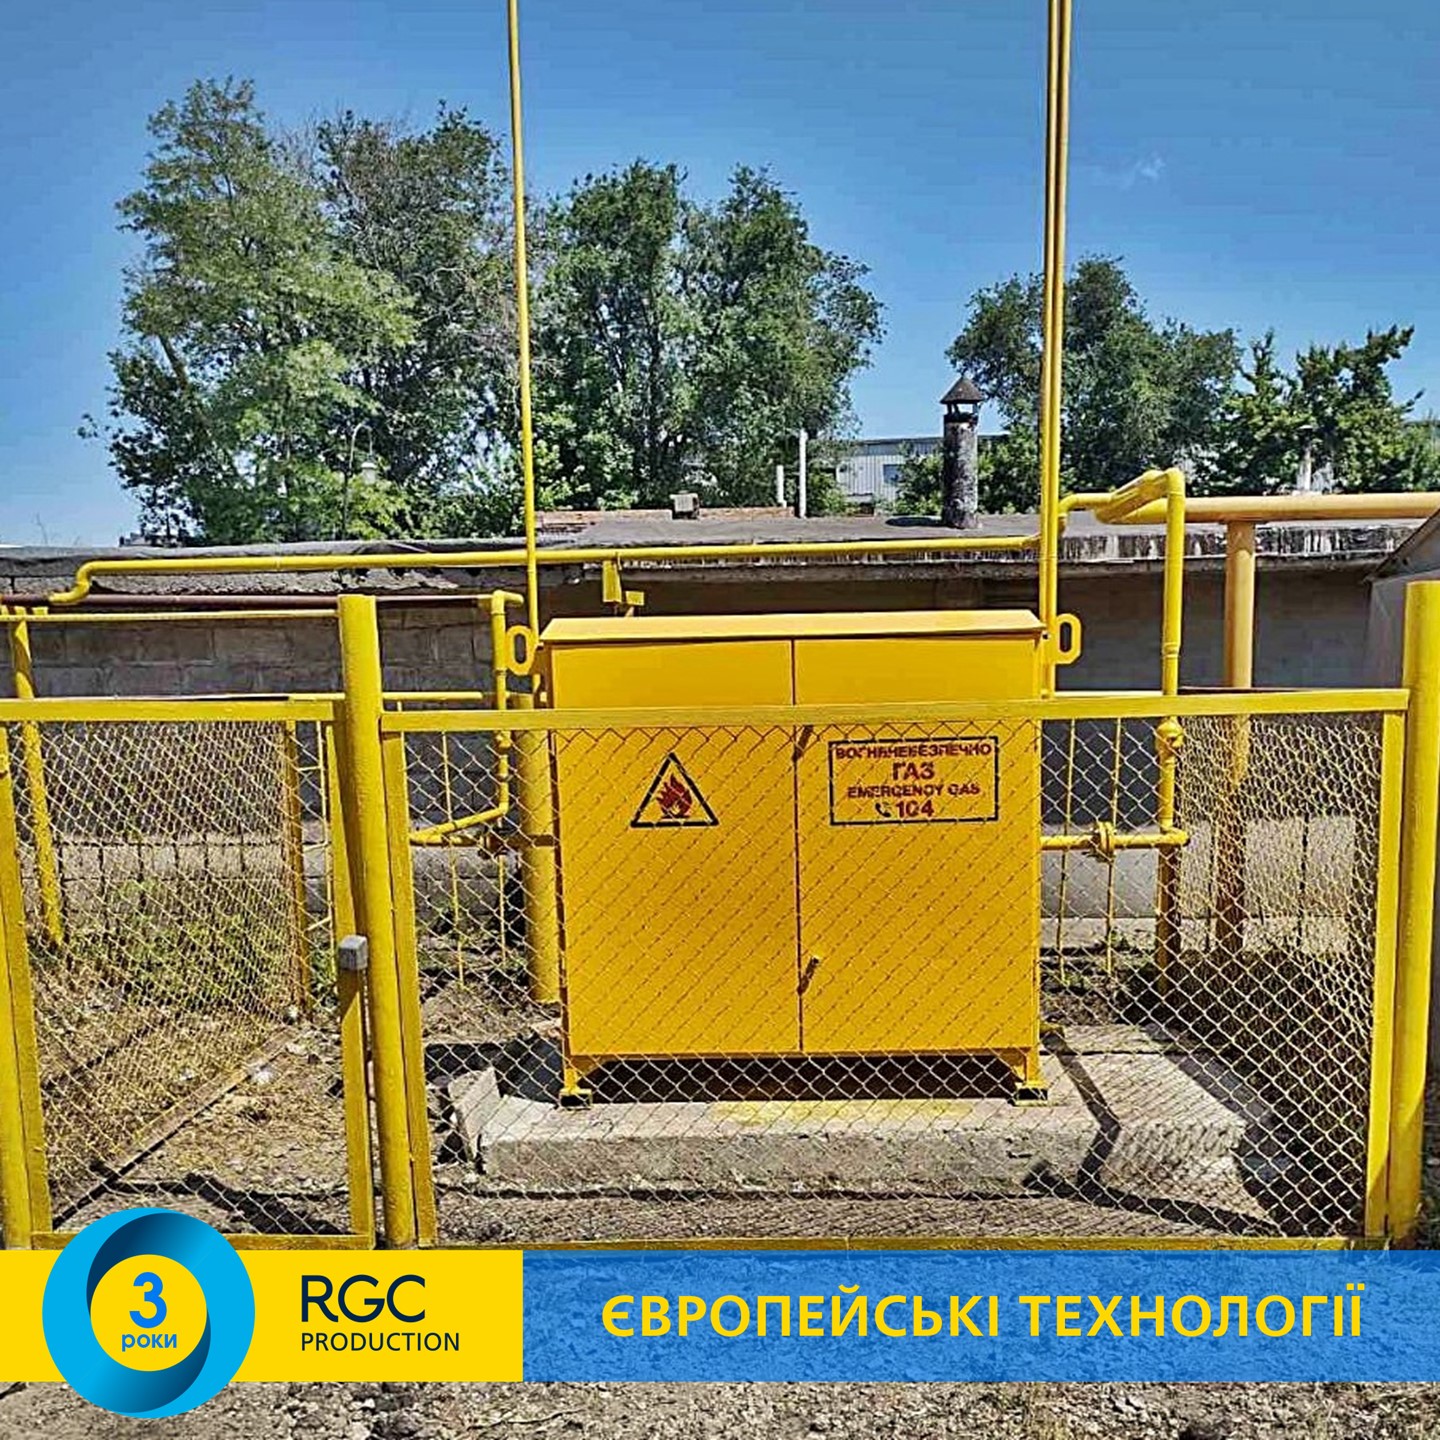 Новий ШГРП RGC Production встановлено у правобережній частині Дніпра